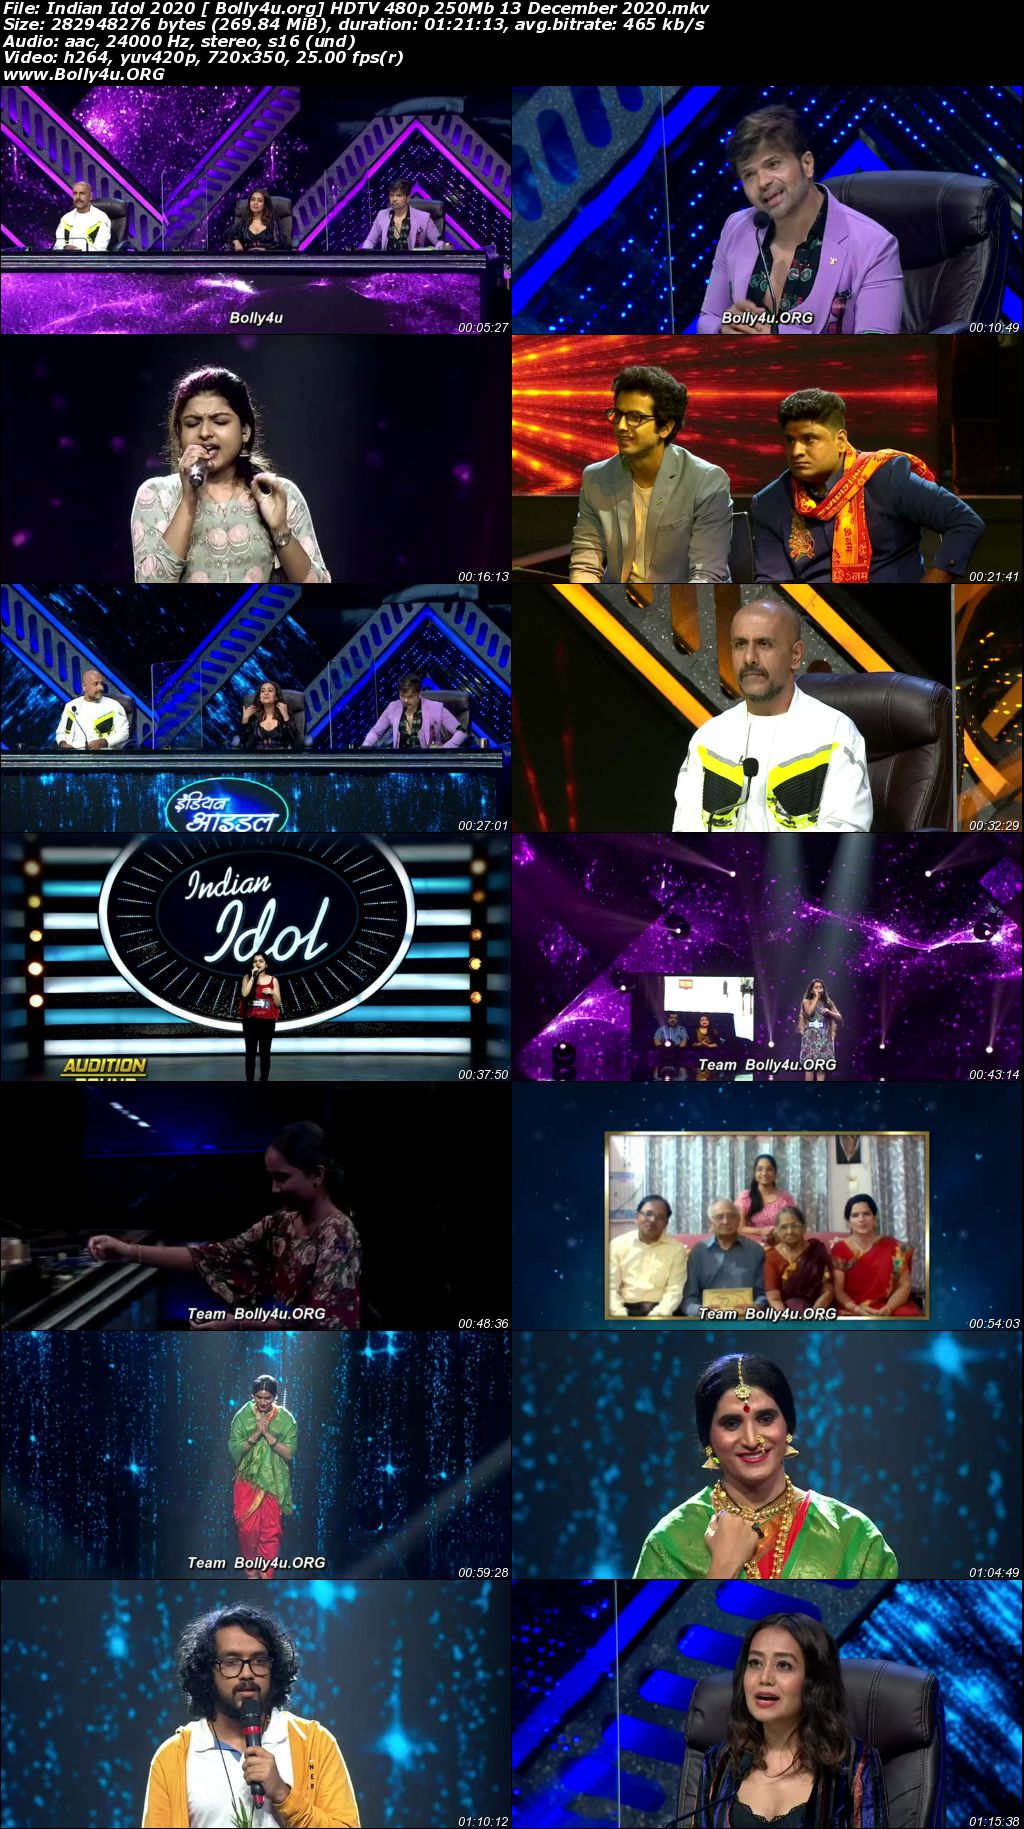 Indian Idol 2020 HDTV 480p 250Mb 13 December 2020 Download